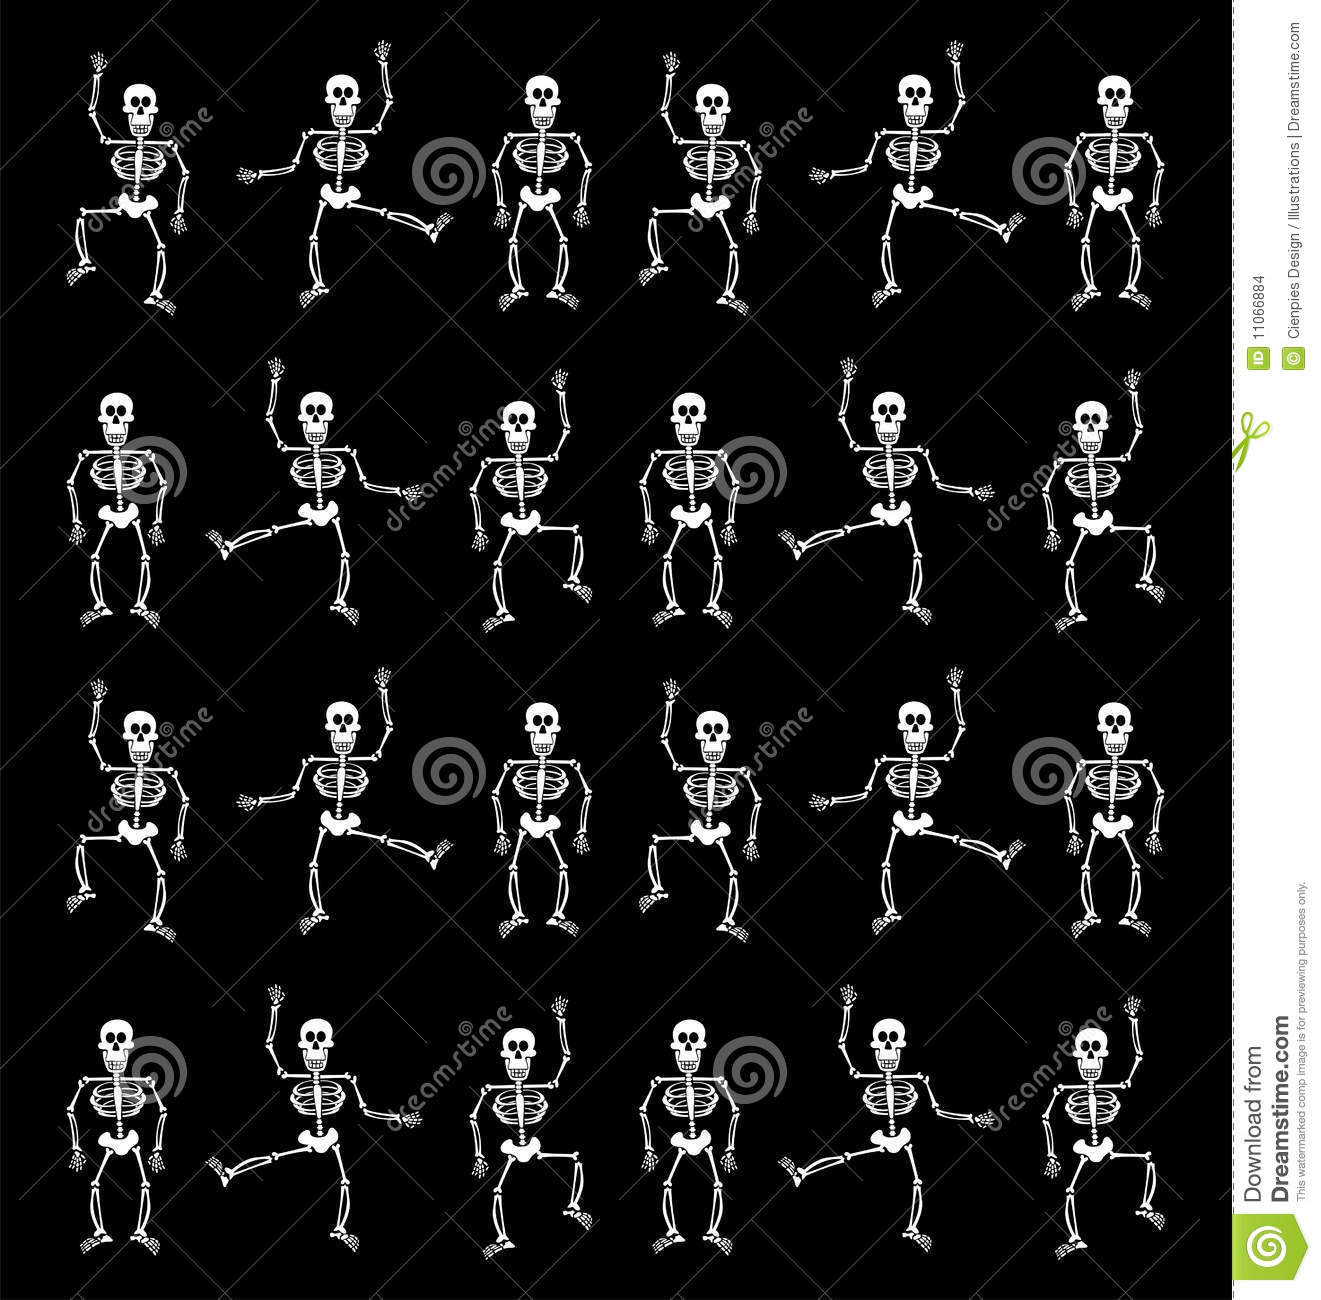 Anexo esqueletos.jpg